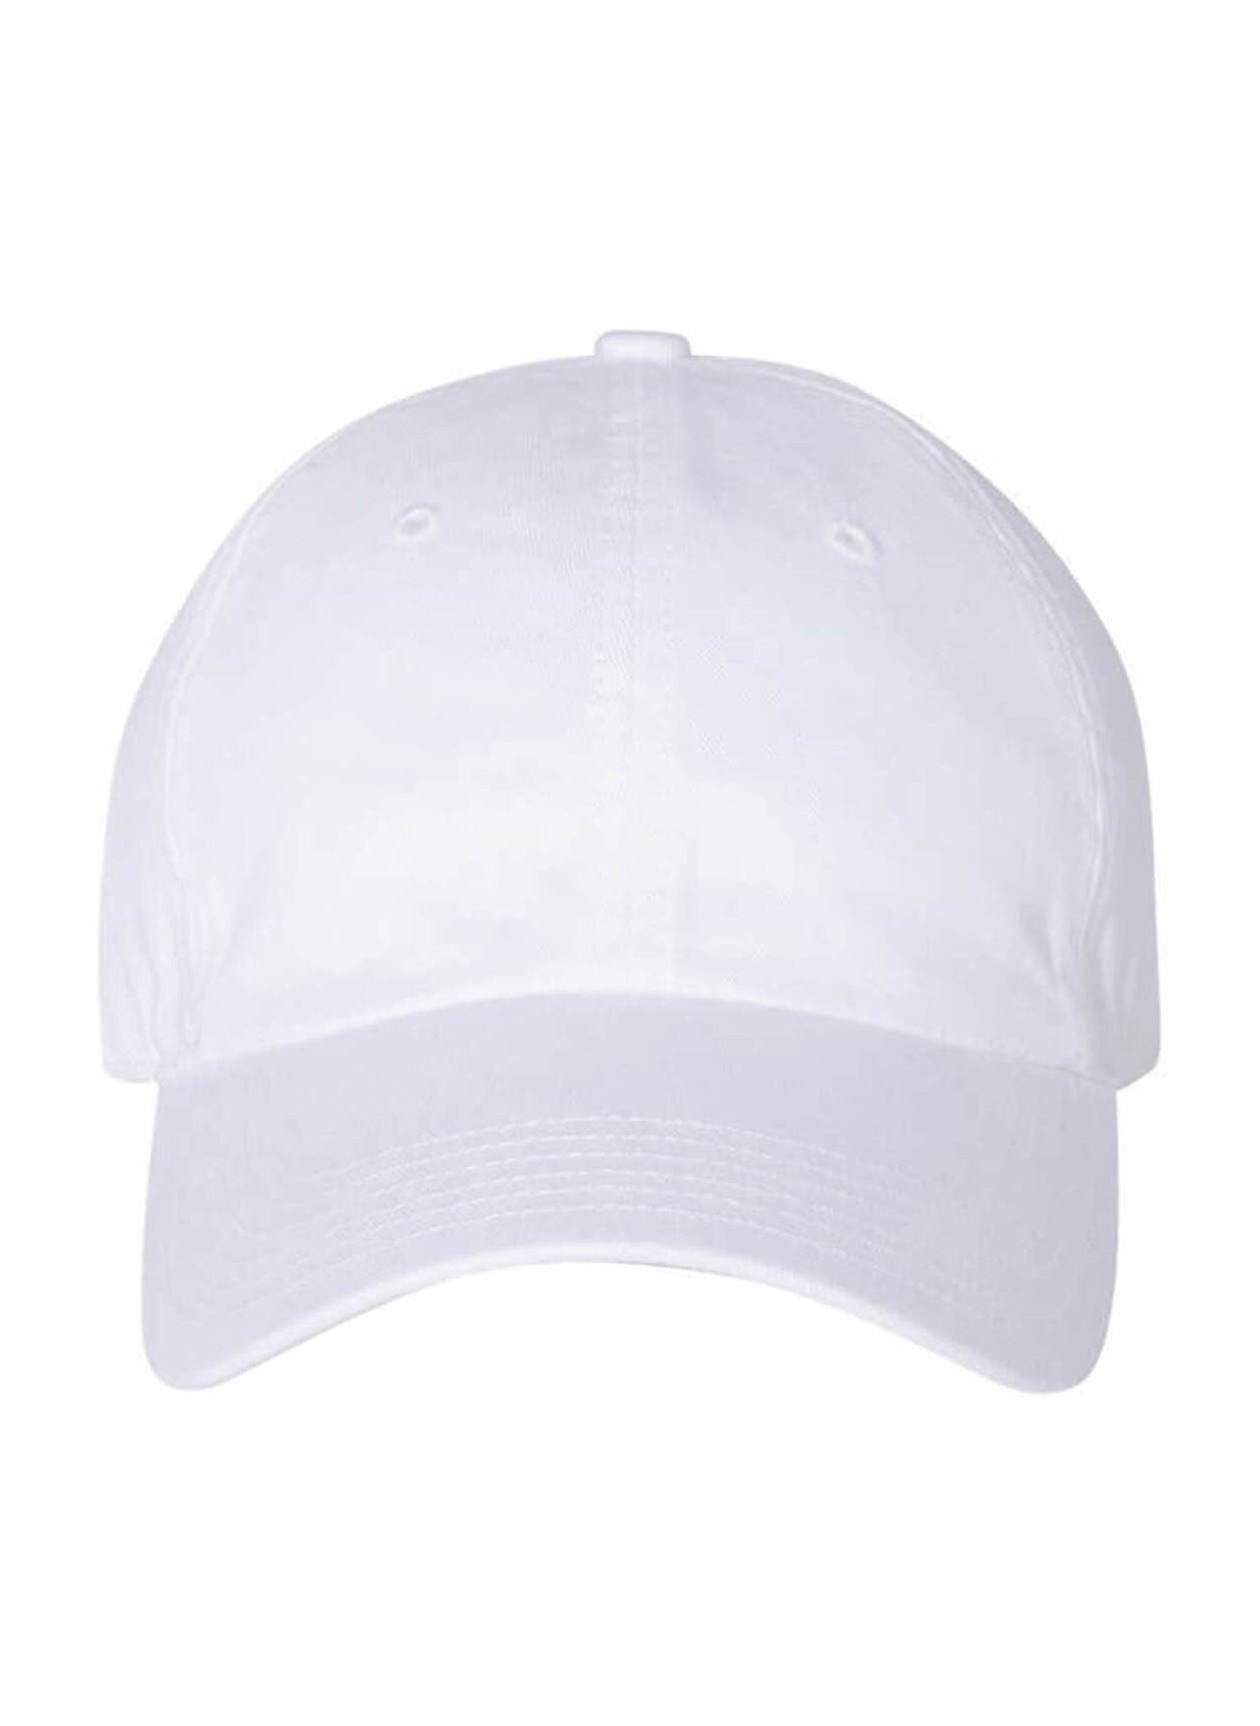 Richardson White Washed Chino Hat